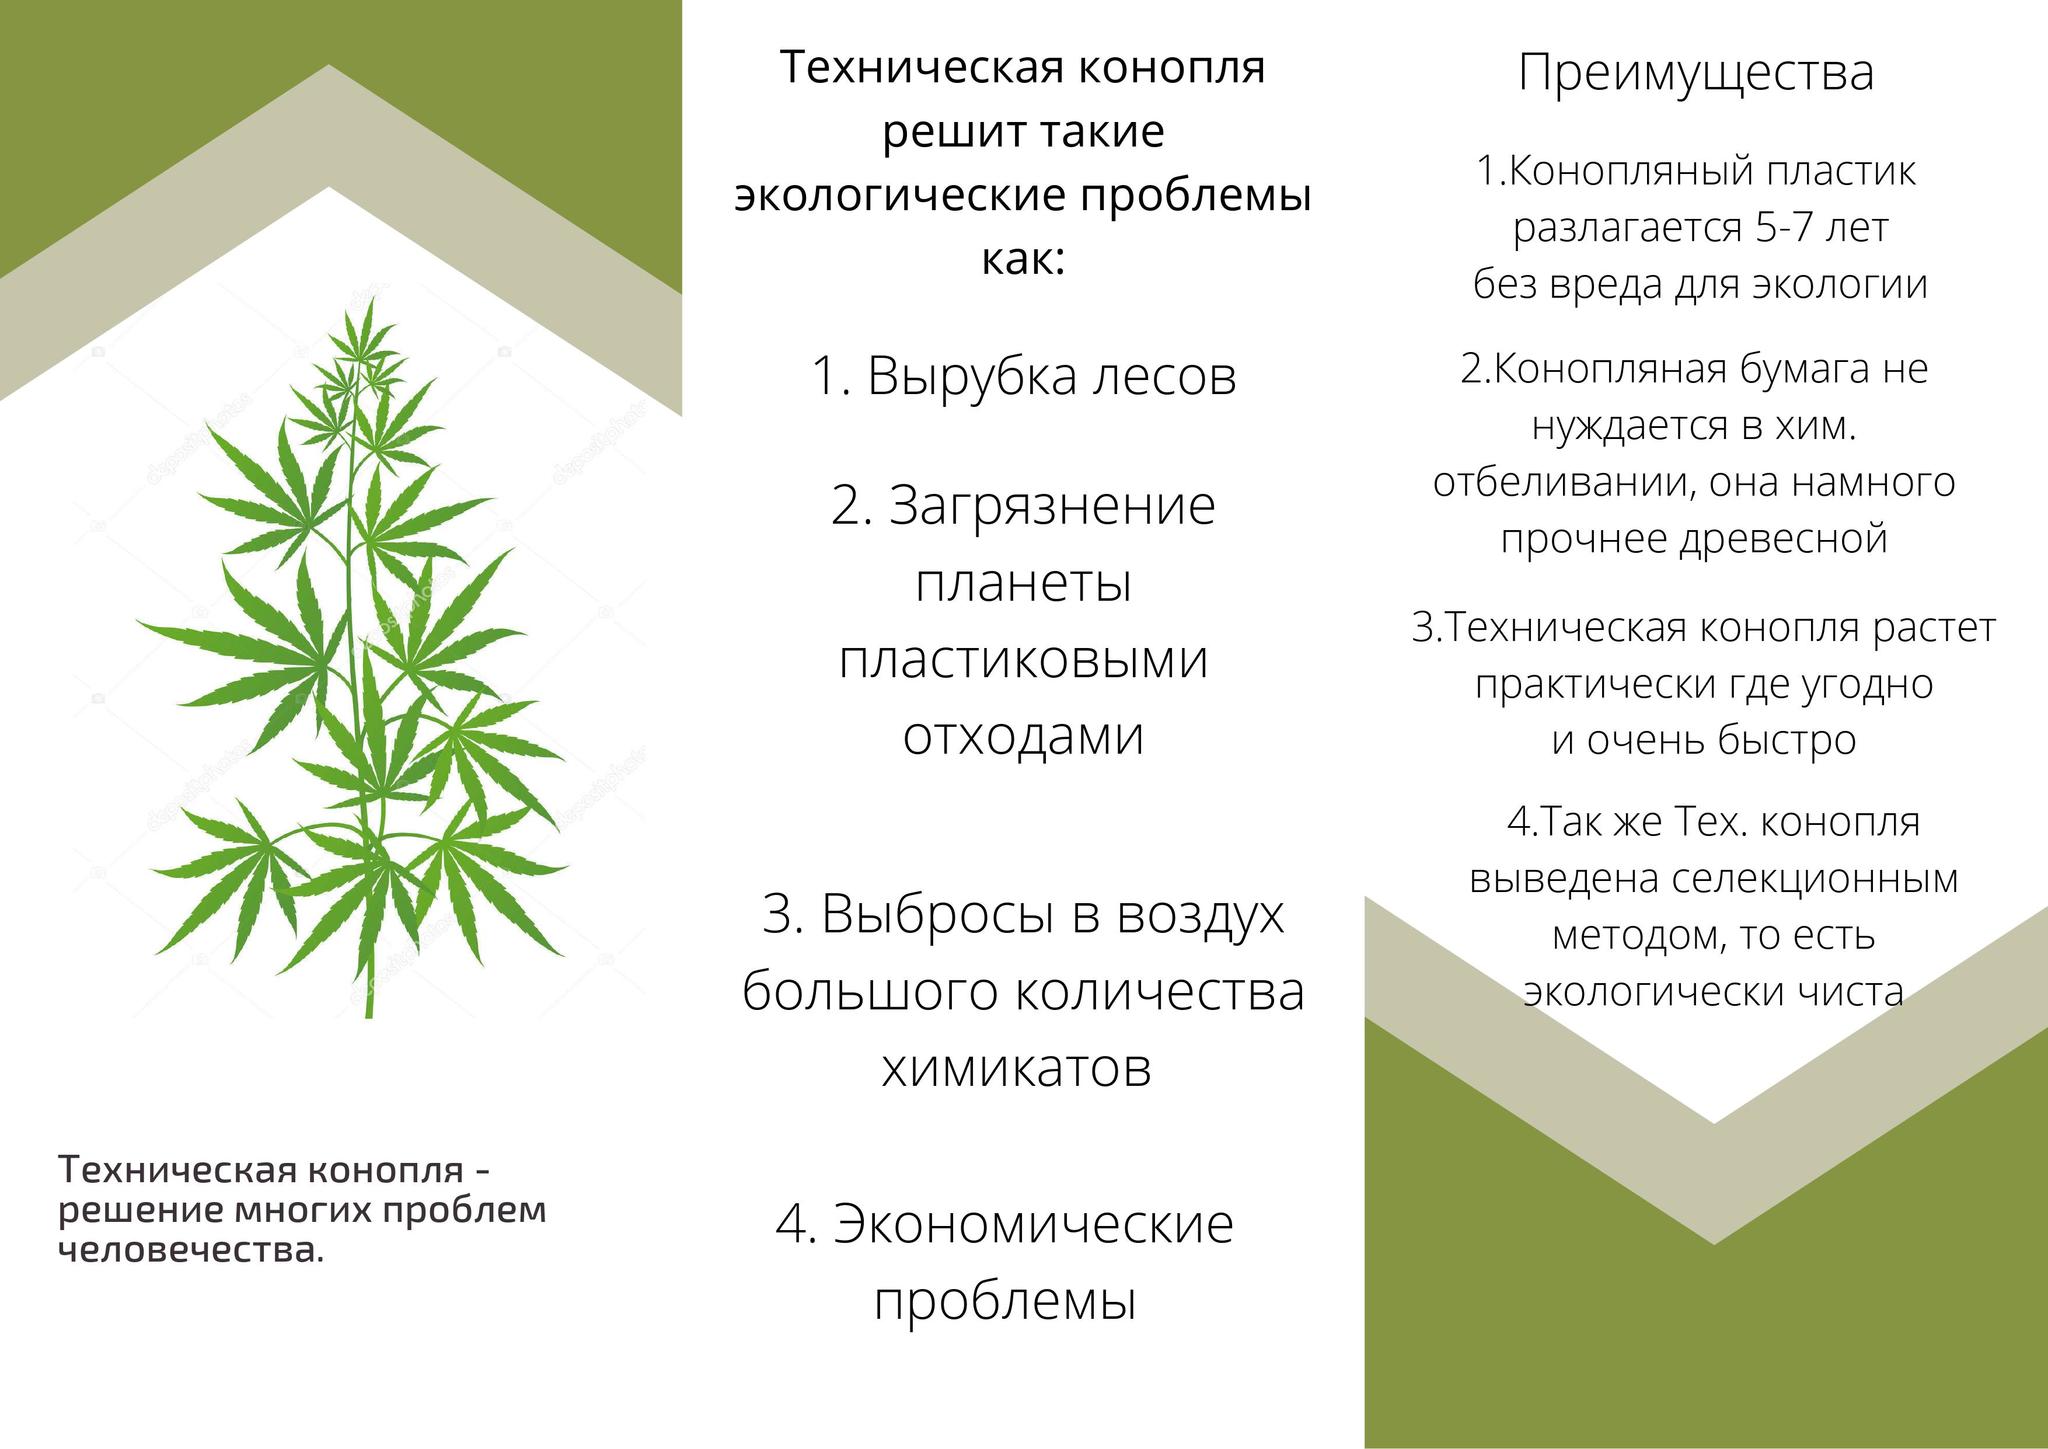 Сорта для новичков конопля купить марихуану в россии